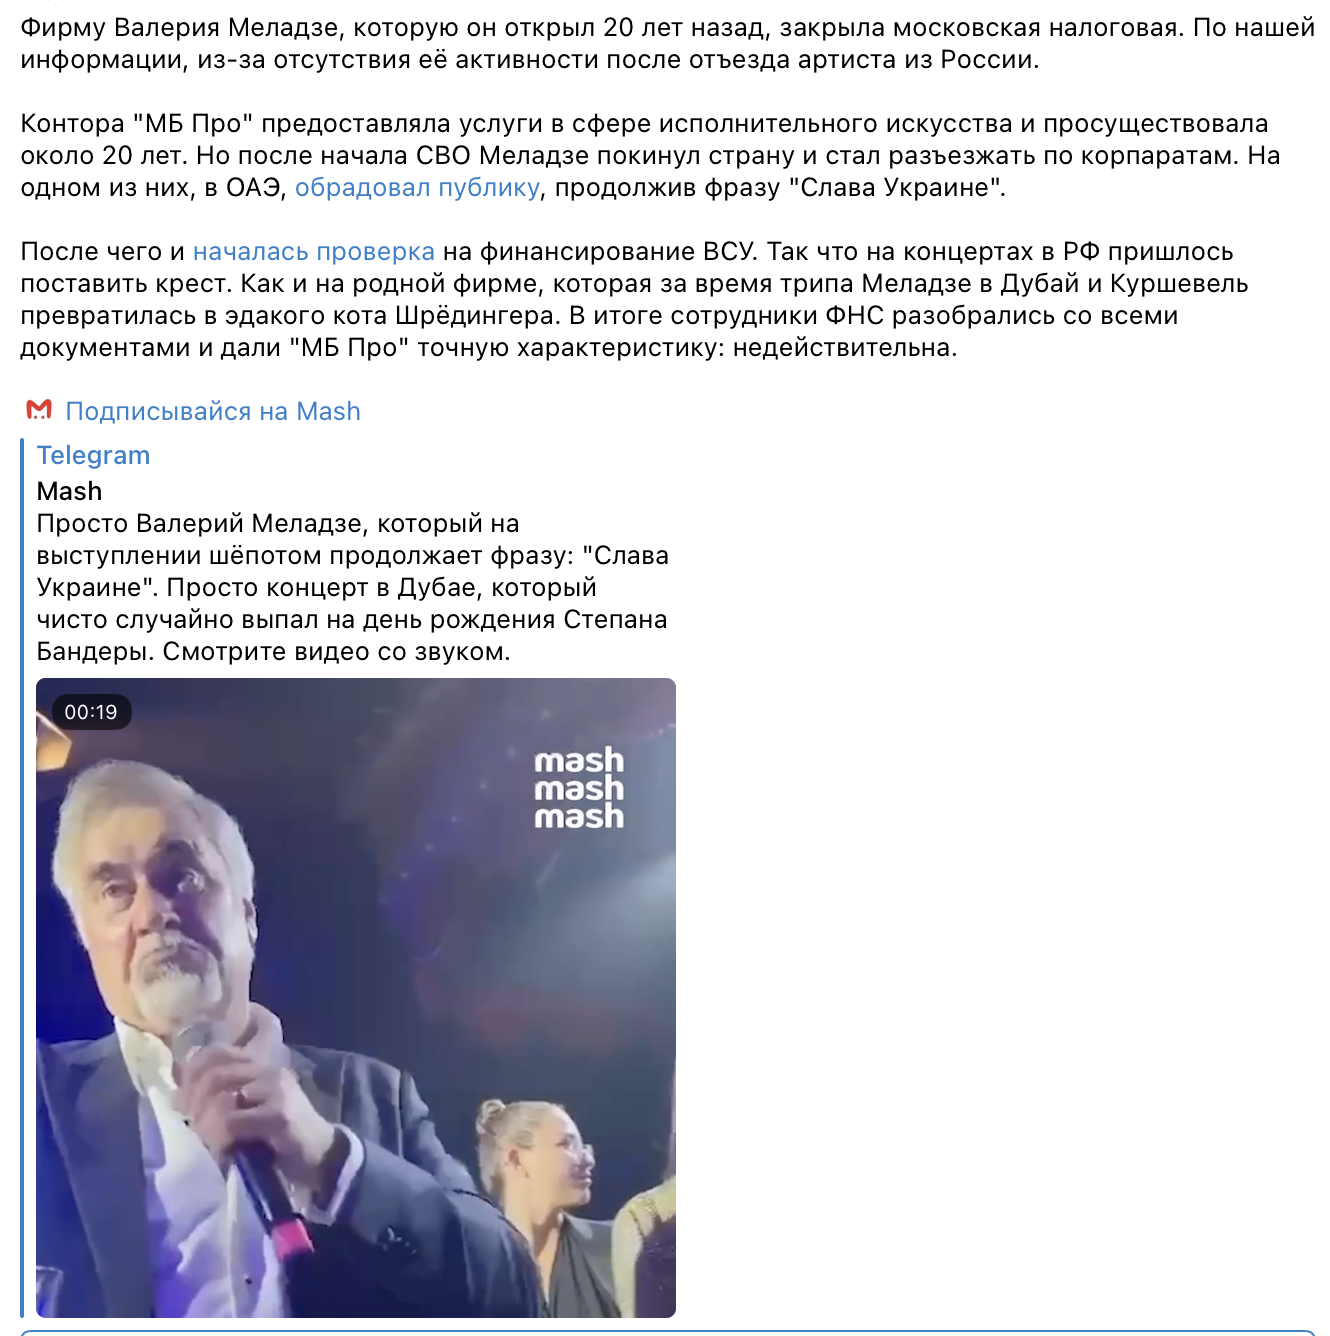 Московская налоговая закрыла фирму Валерия Меладзе в РФ: он уехал после 24 февраля и говорил "Слава Украине"